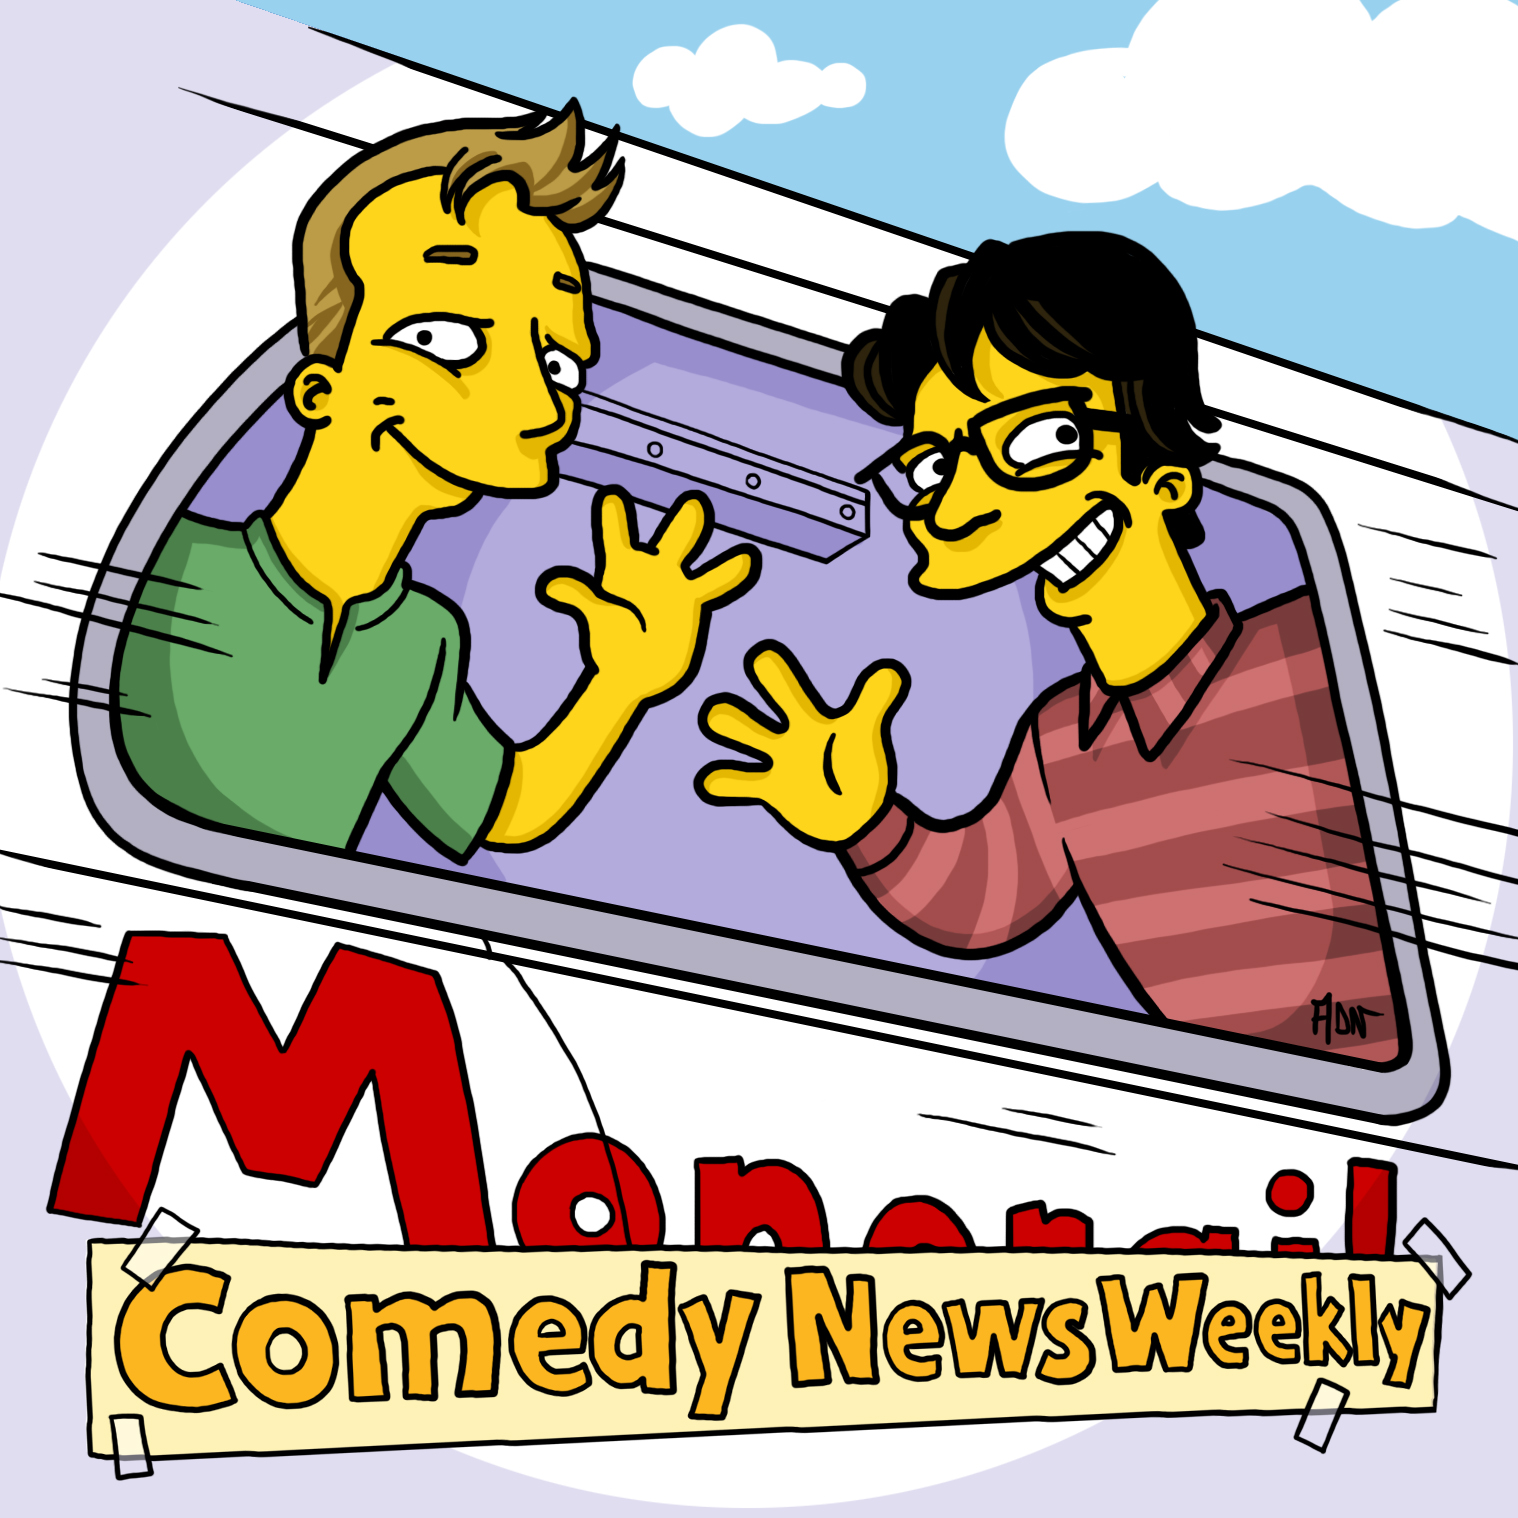 S02E22 - Cet épisode parle du Summer of Comedy, la saison la plus prometteuse en humour depuis 1768